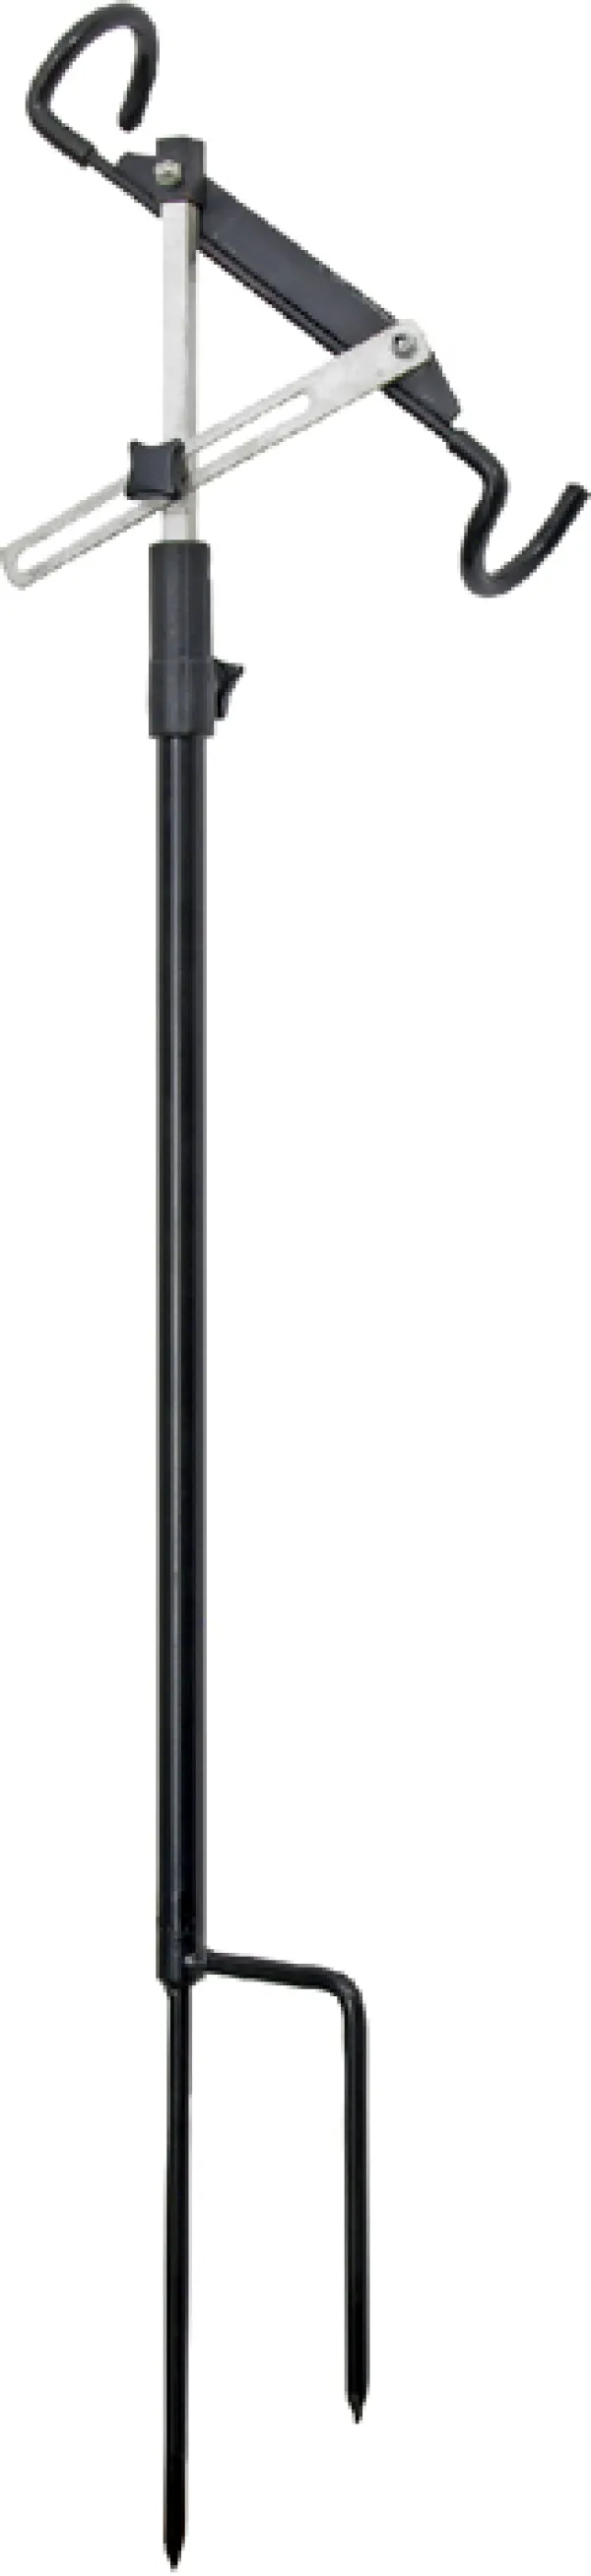 KONGER Adjustable Rod Rest 75-100cm